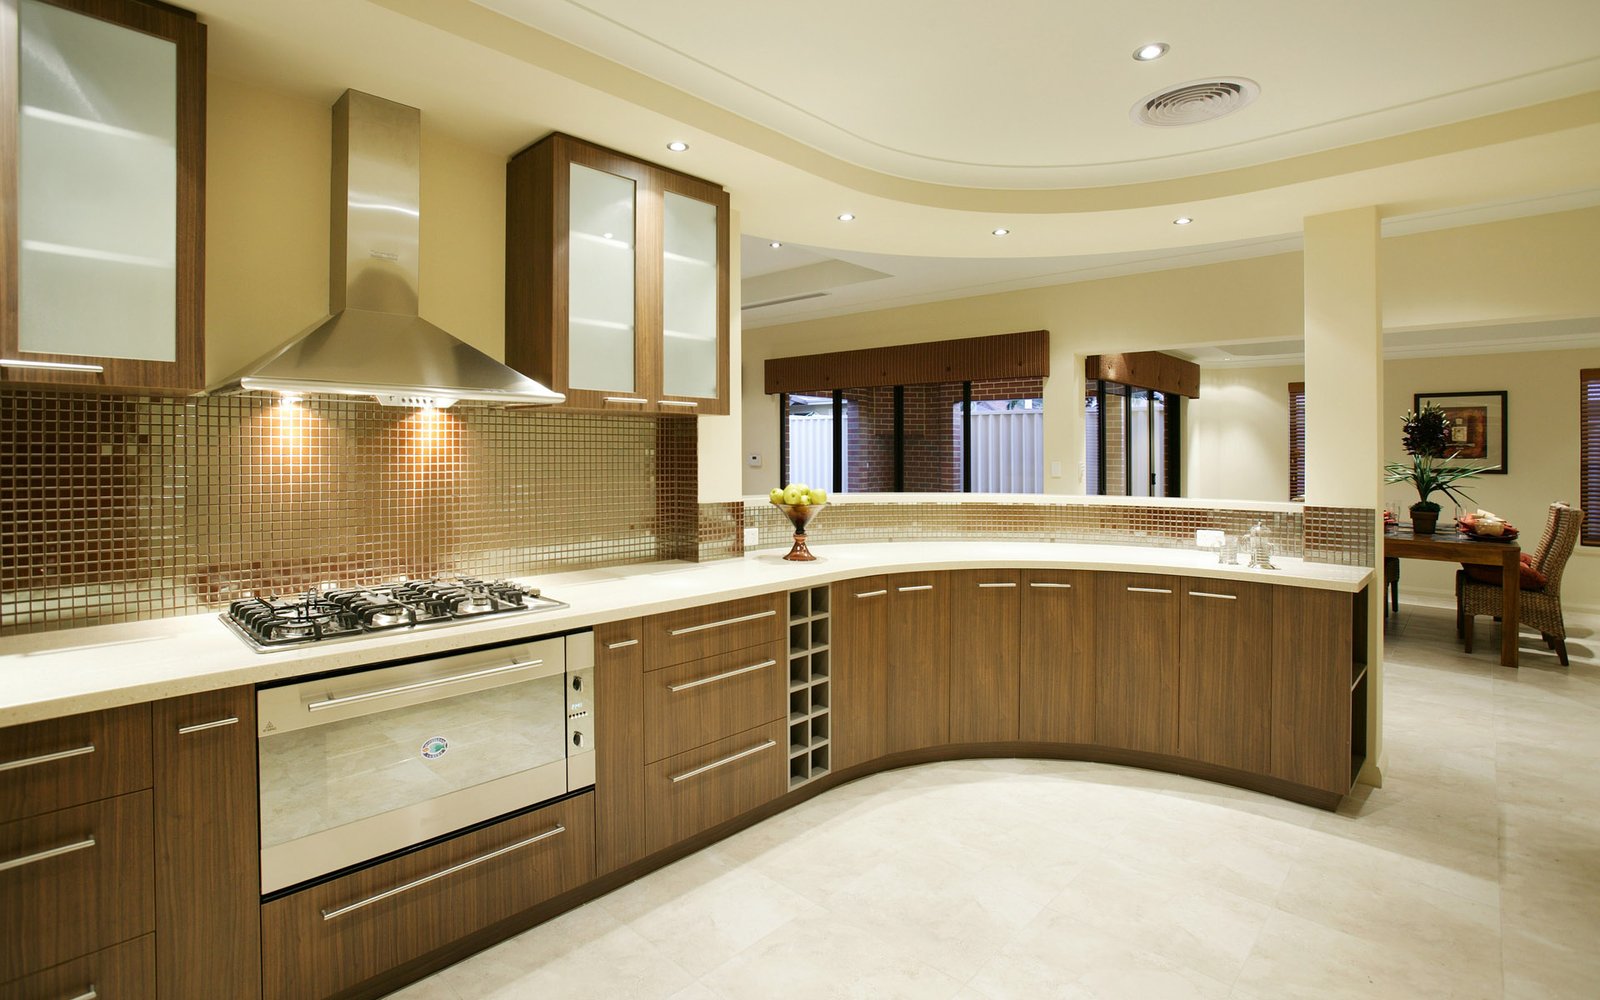 modern-kitchen-interior-decoration modern kitchen interior decoration